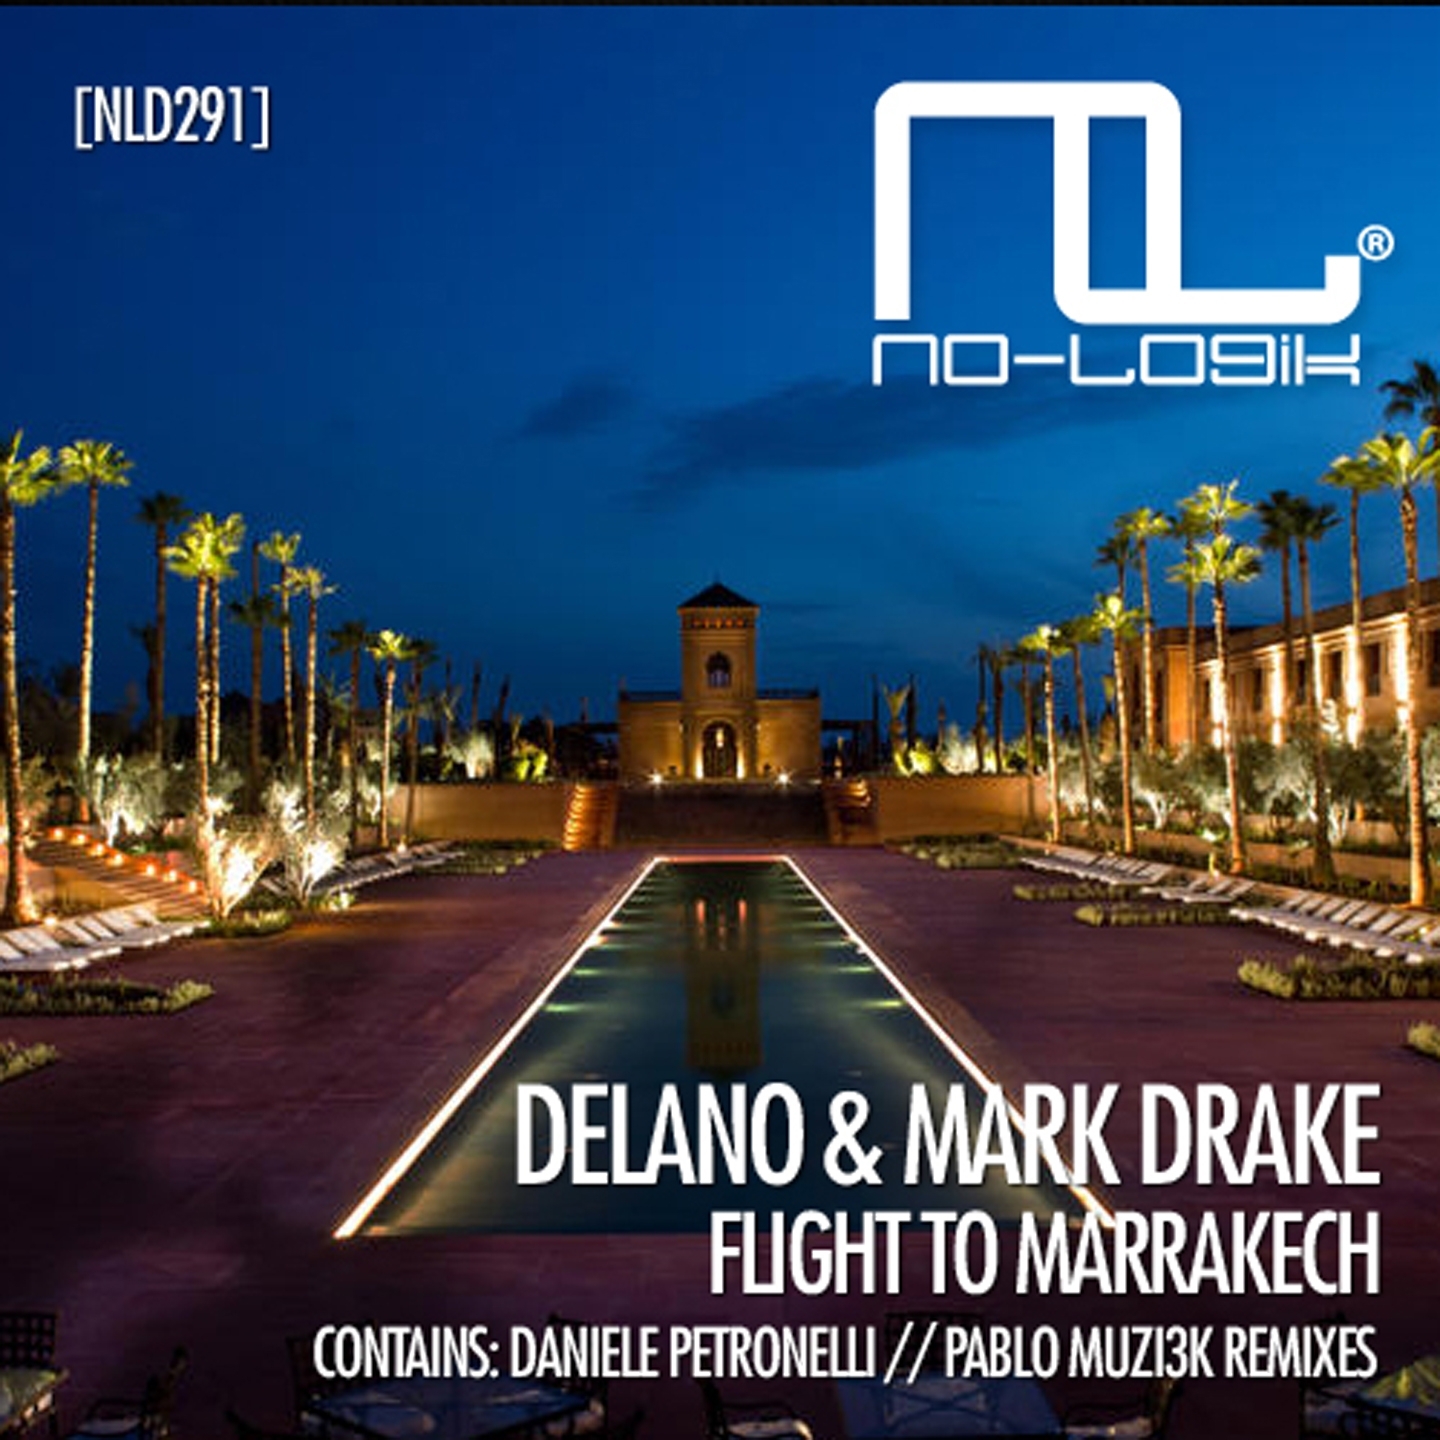 Flight to Marrakech (Pablo Muzi3k Remix)